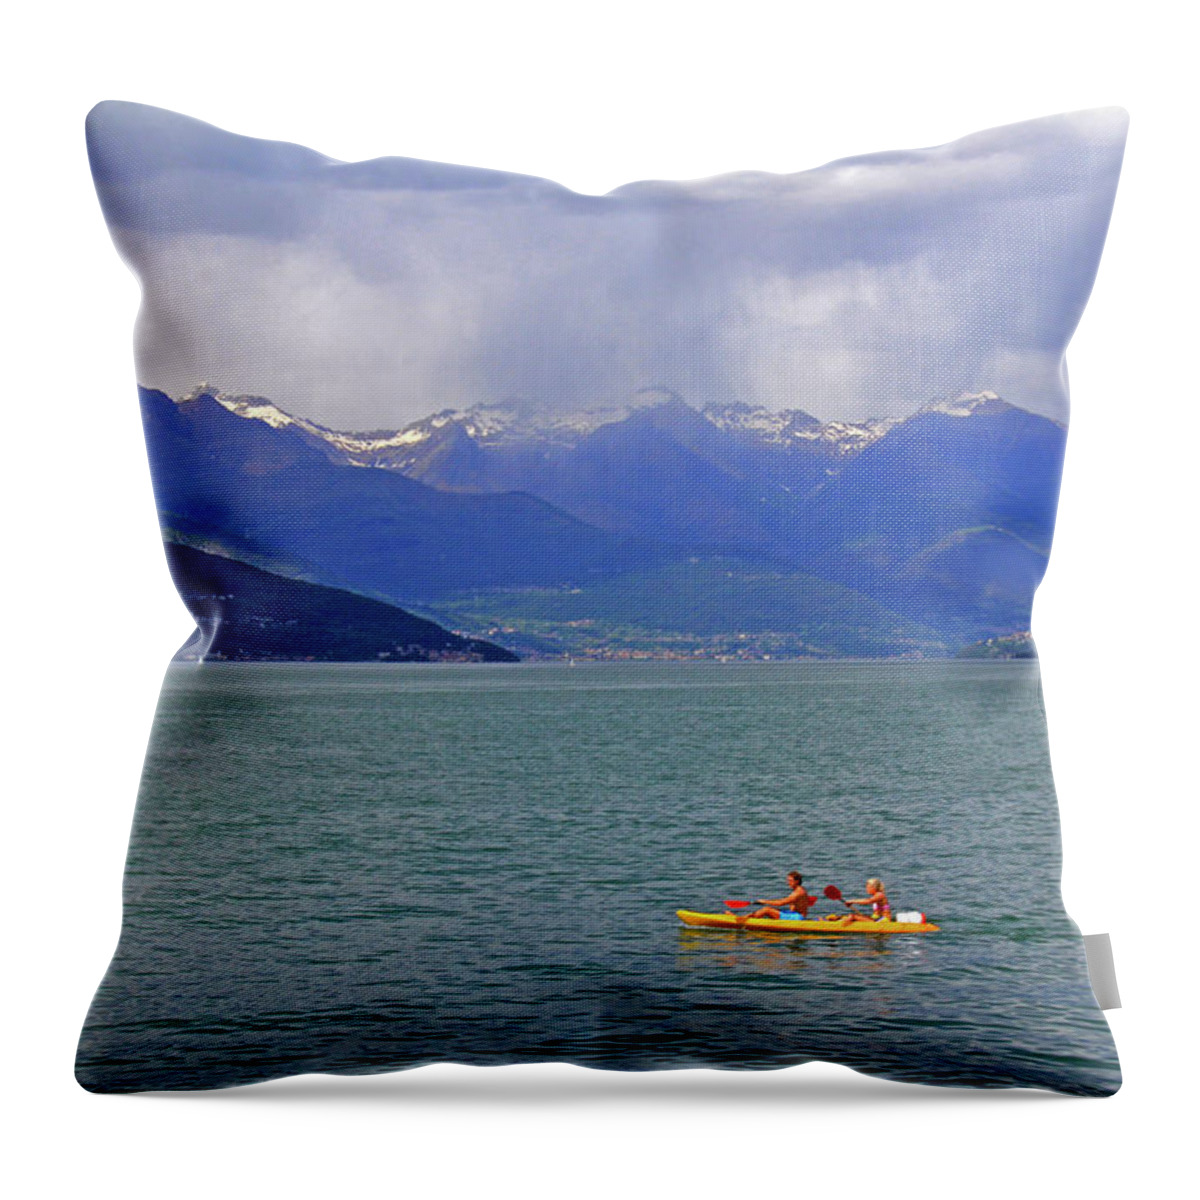 Lake Como Throw Pillow featuring the photograph Lake Como Italy #2 by Richard Krebs